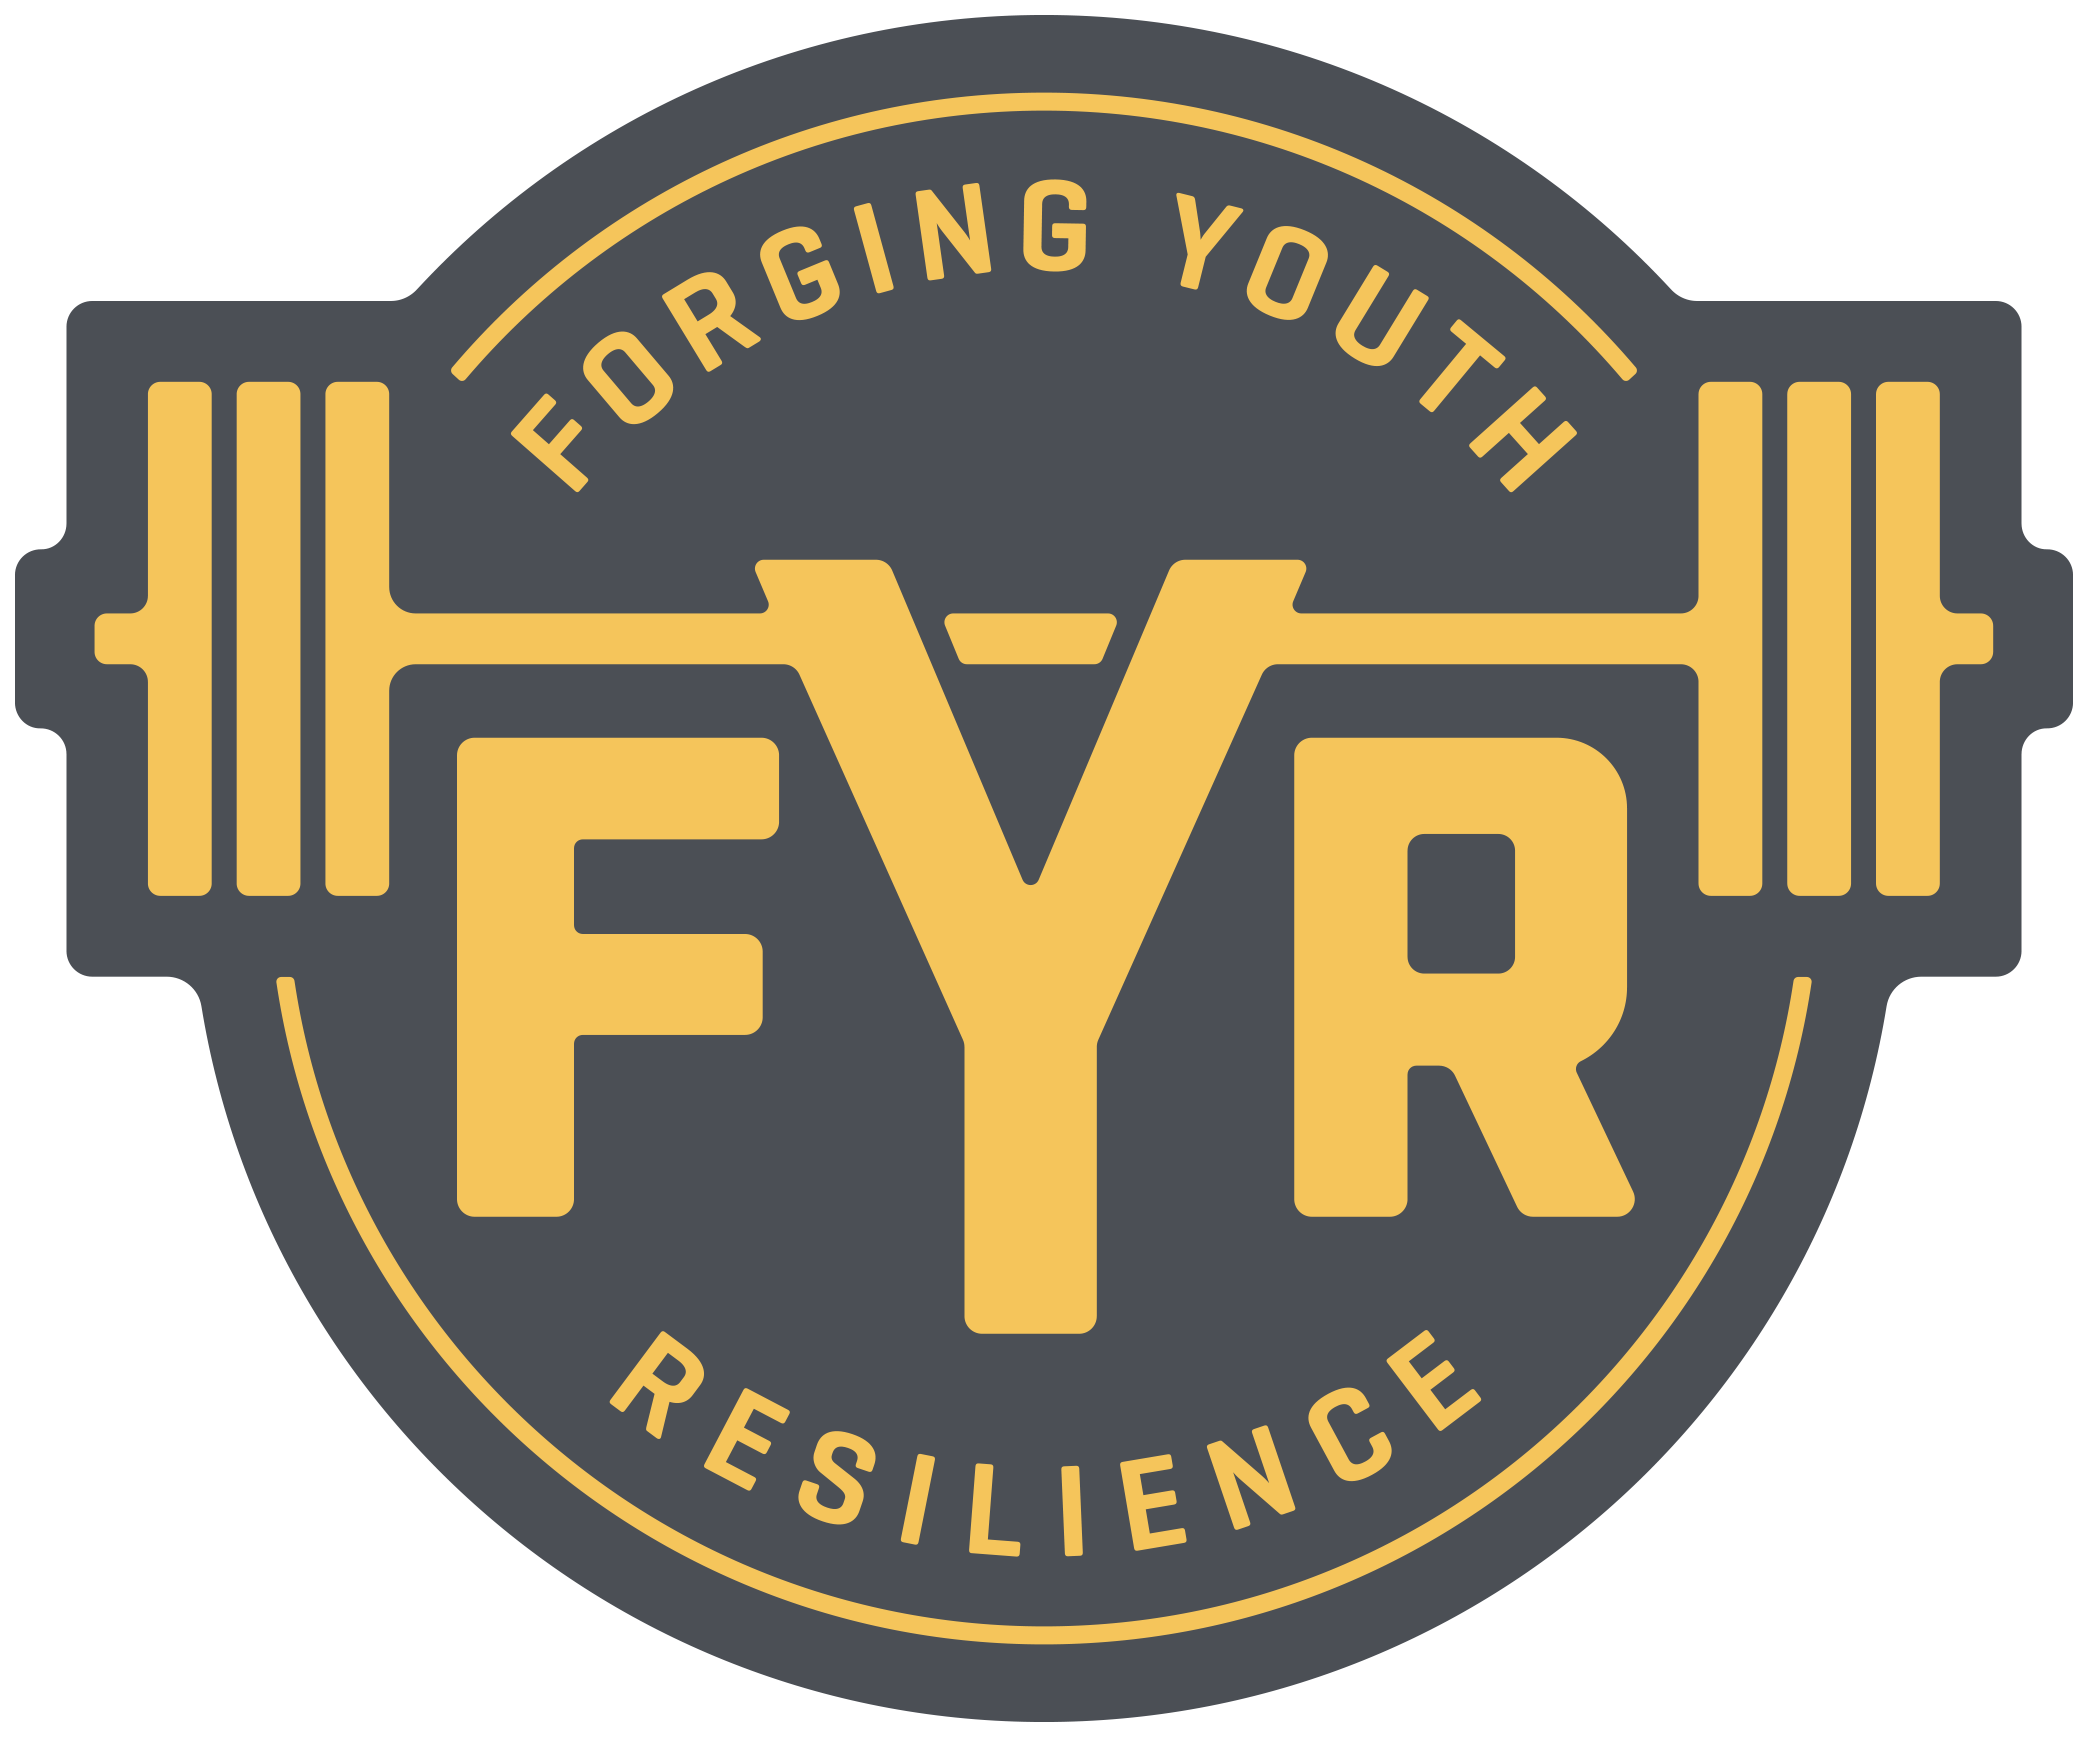 FYR Logo